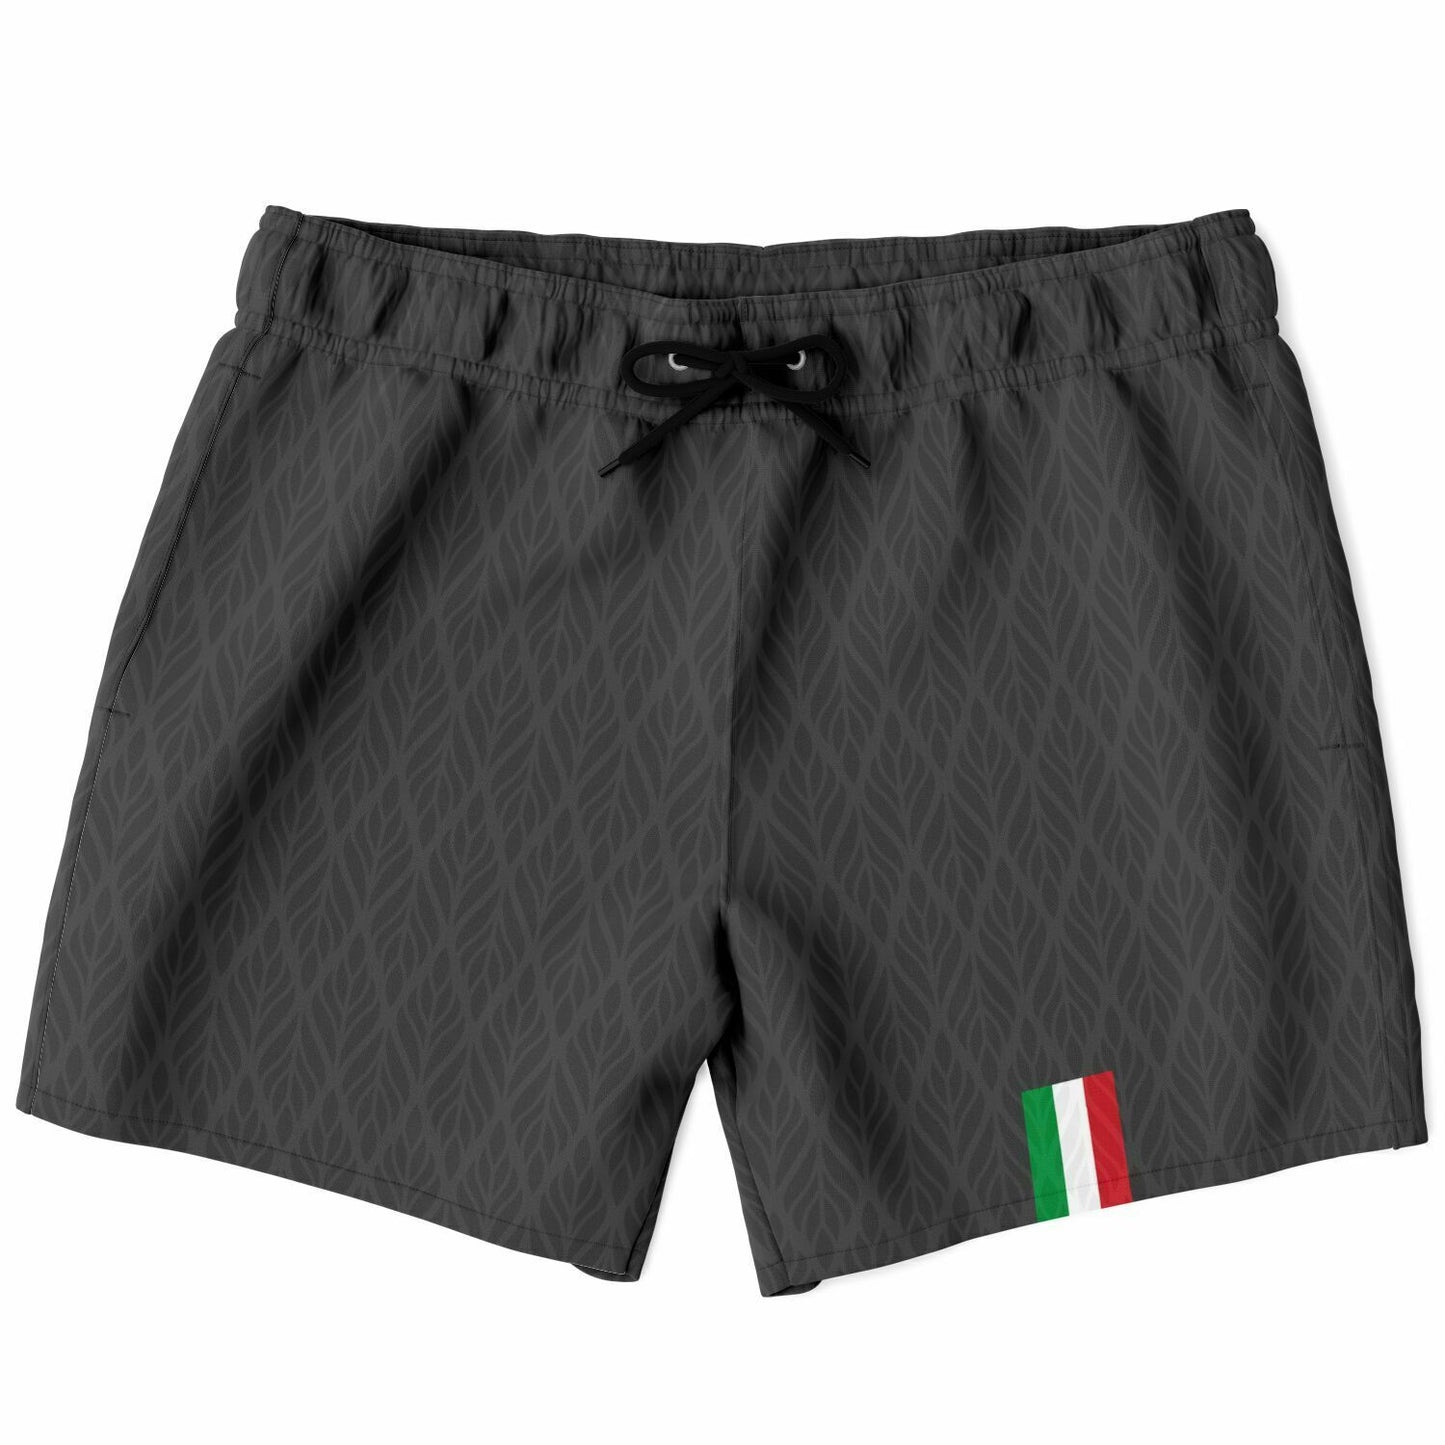 Italia Swim trunks grey